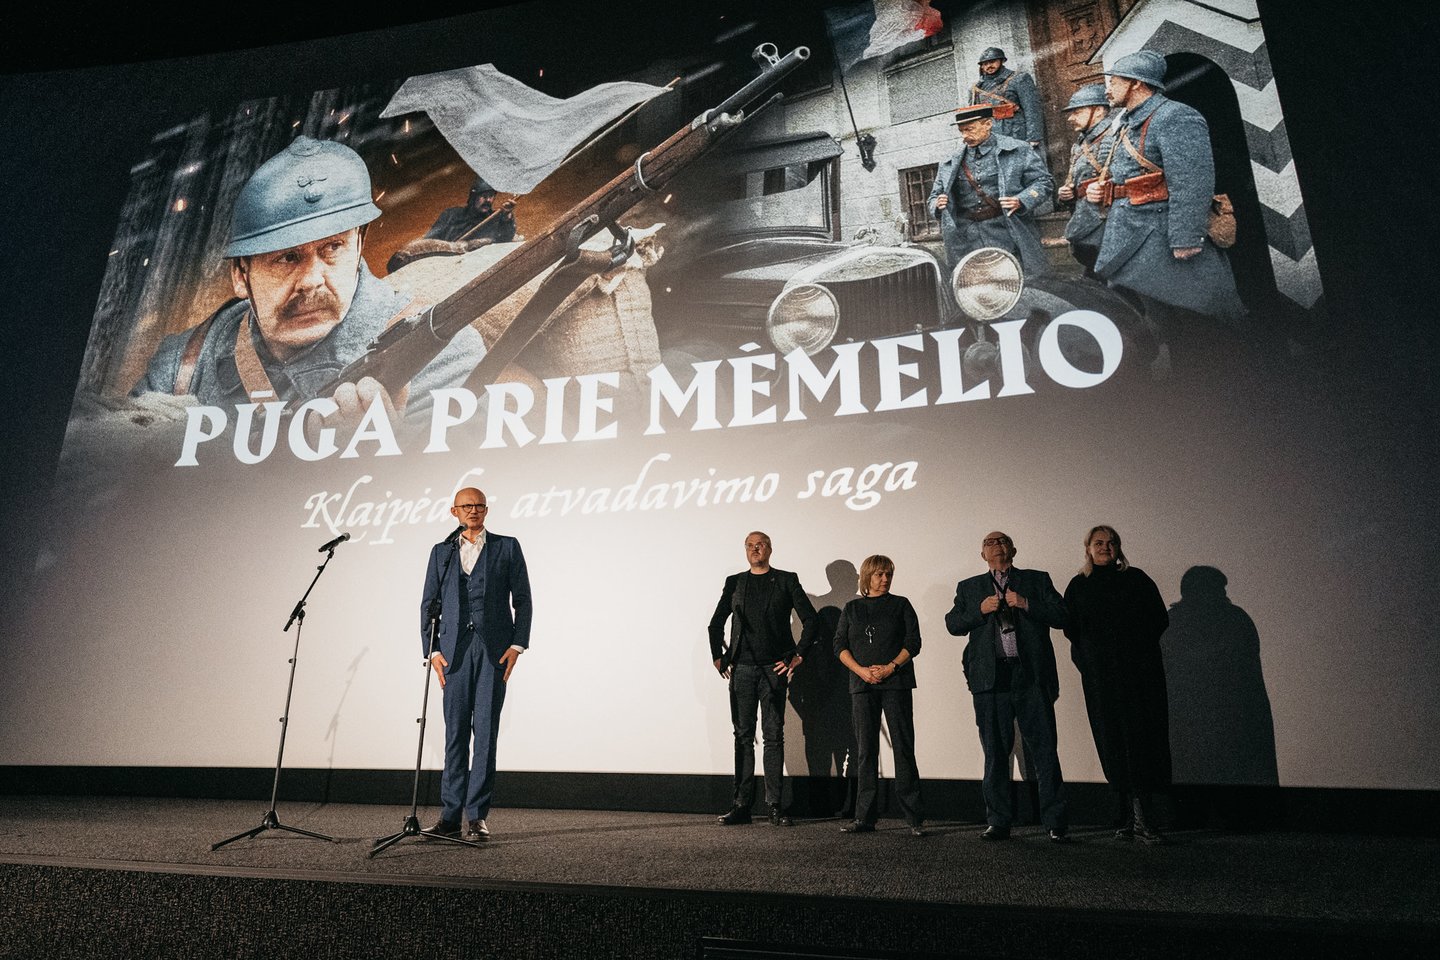 Istorinis filmas "Pūga prie Mėmelio.Klaipėdos atvadavimo saga" jau rodomas kino teatruose.<br> D.Rimeikos nuotr.